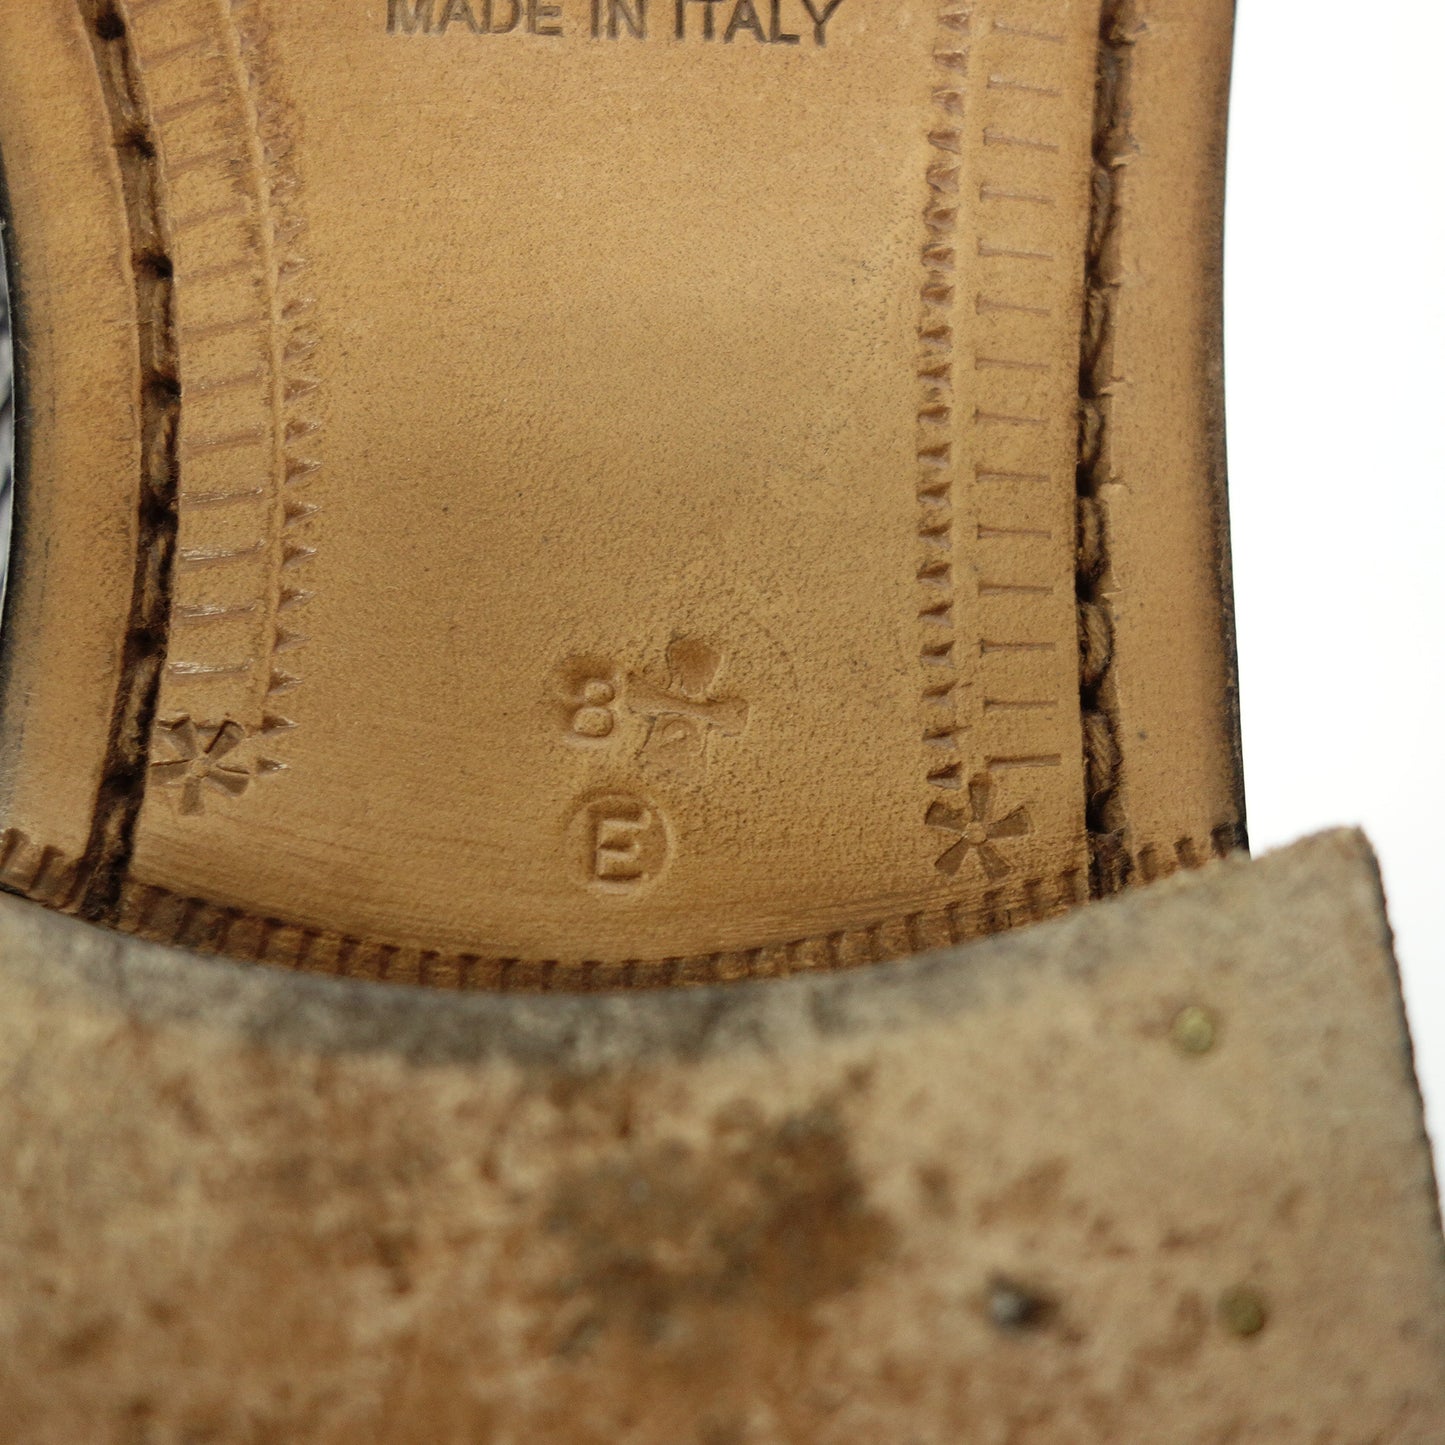 Good condition ◆ Salvatore Ferragamo Leather Loafer Slip-on Python Men's Dark Gray Size 8.5E Salvatore Ferragamo [AFD8] 